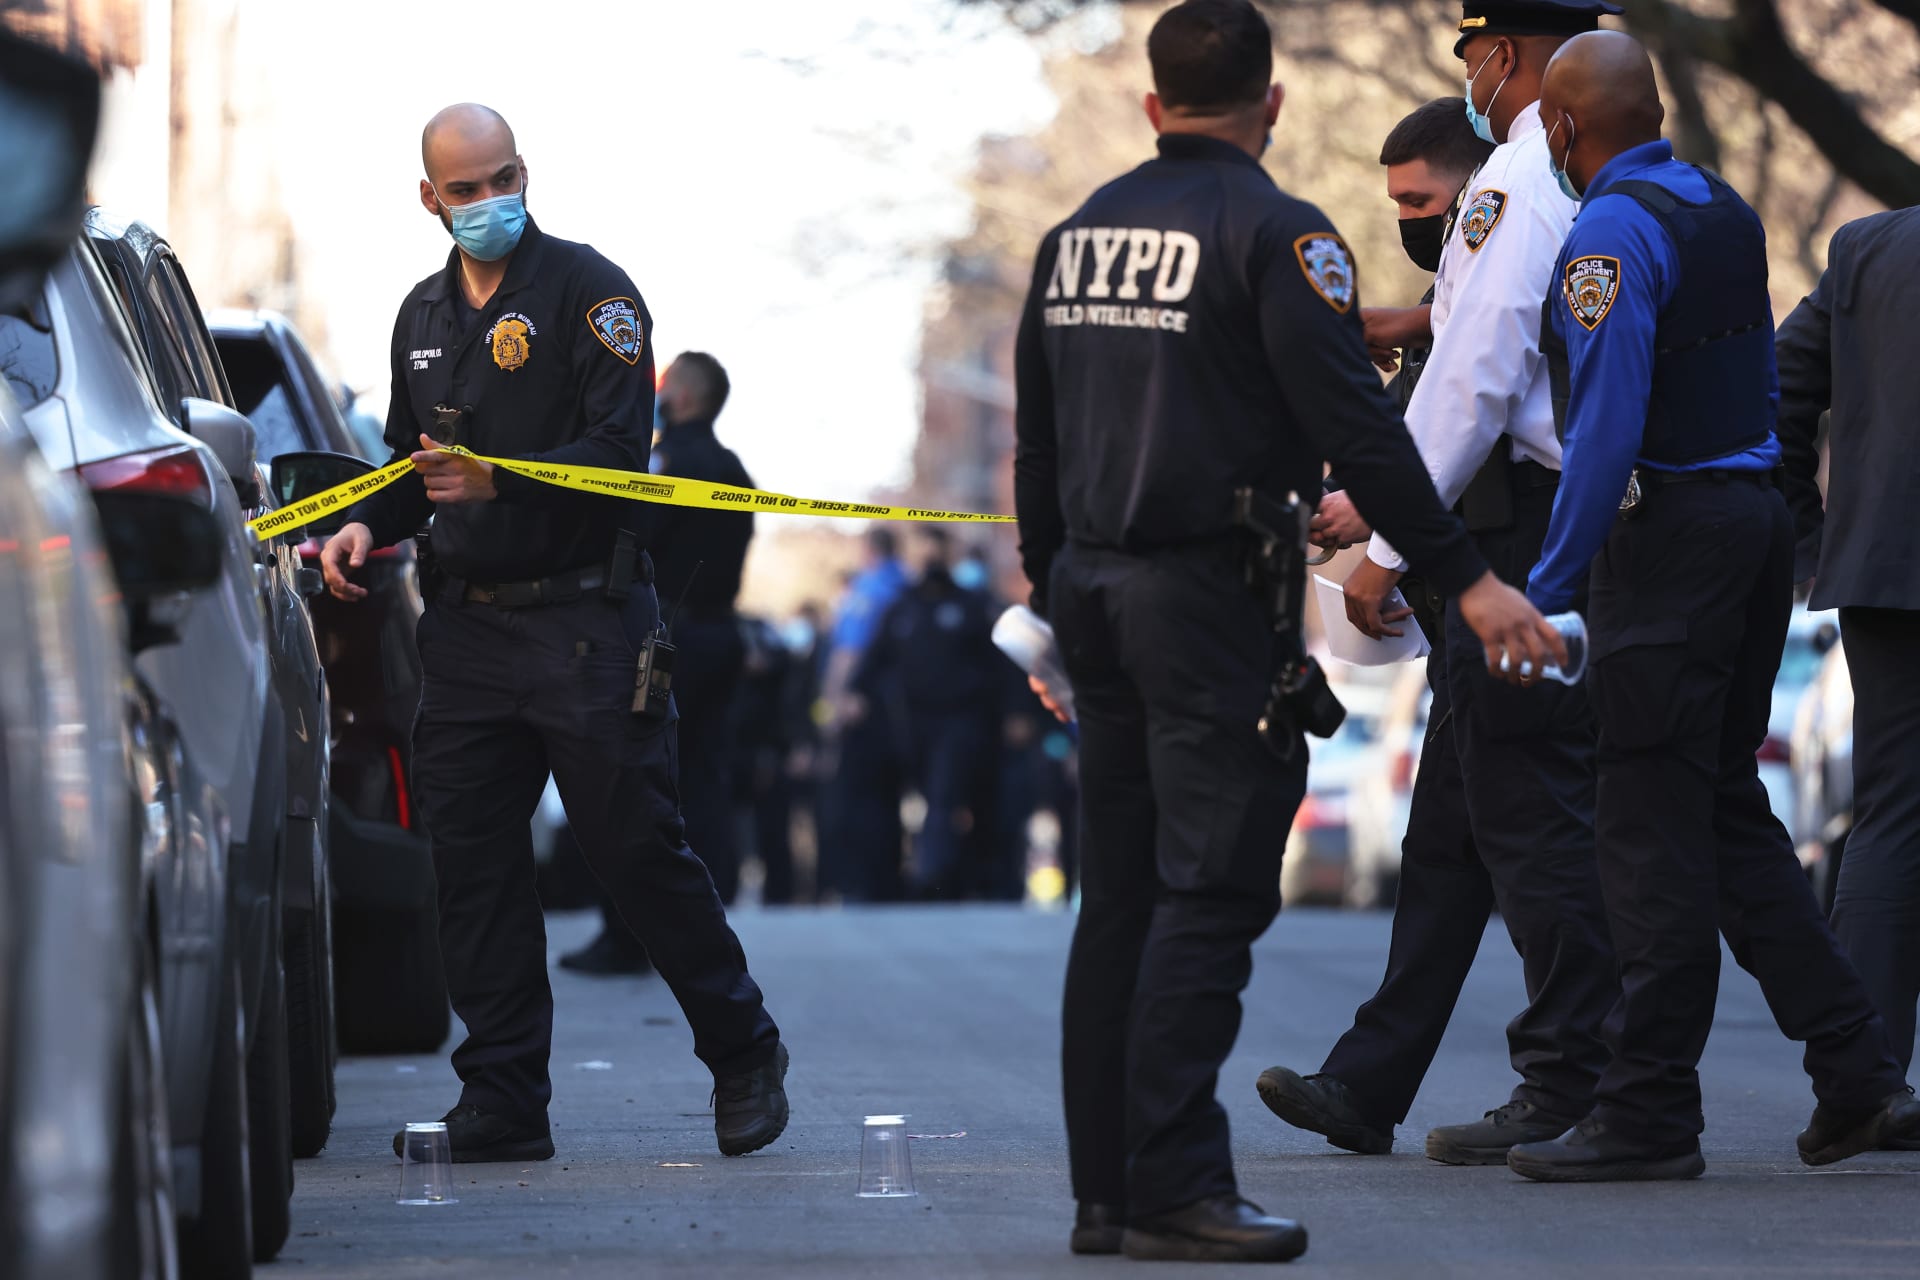 الشرطة الأمريكية: وفاة4 أشخاص وإصابة 3 بينهم شرطيان بحادث طعن في نيويورك ومقتل المشتبه به 